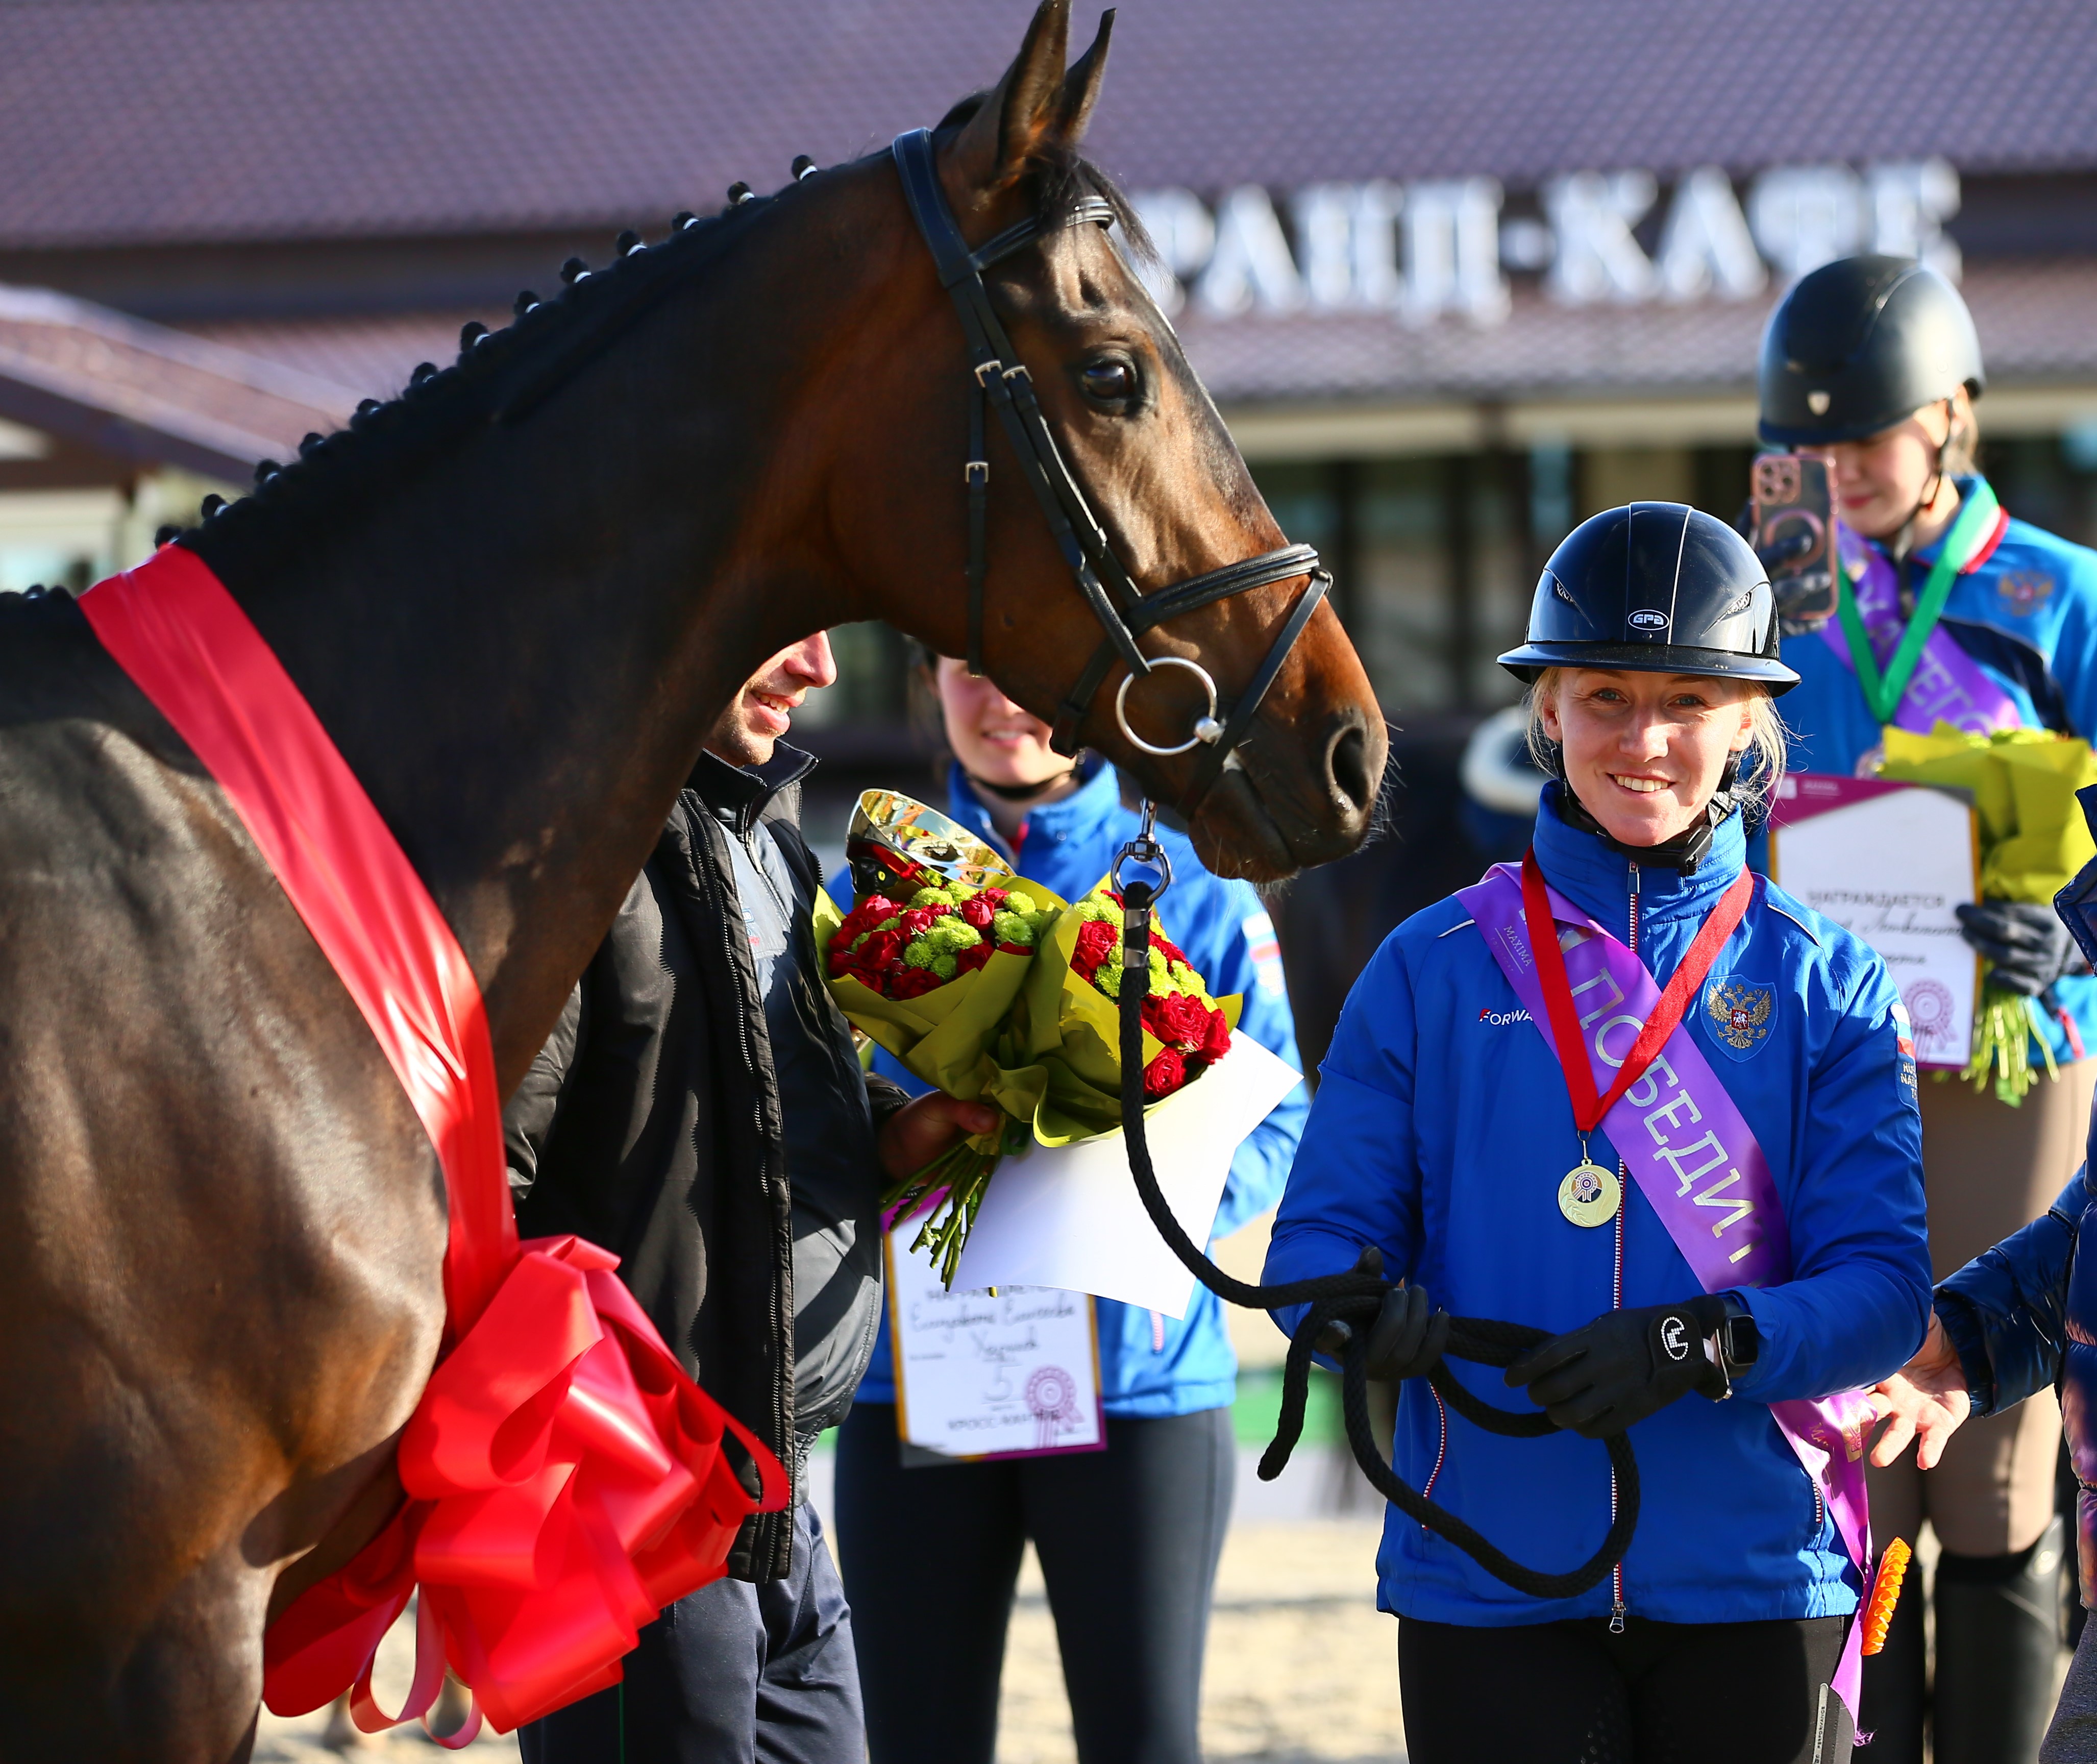 Олеся Косарева выиграла лошадь в кросс-кантри